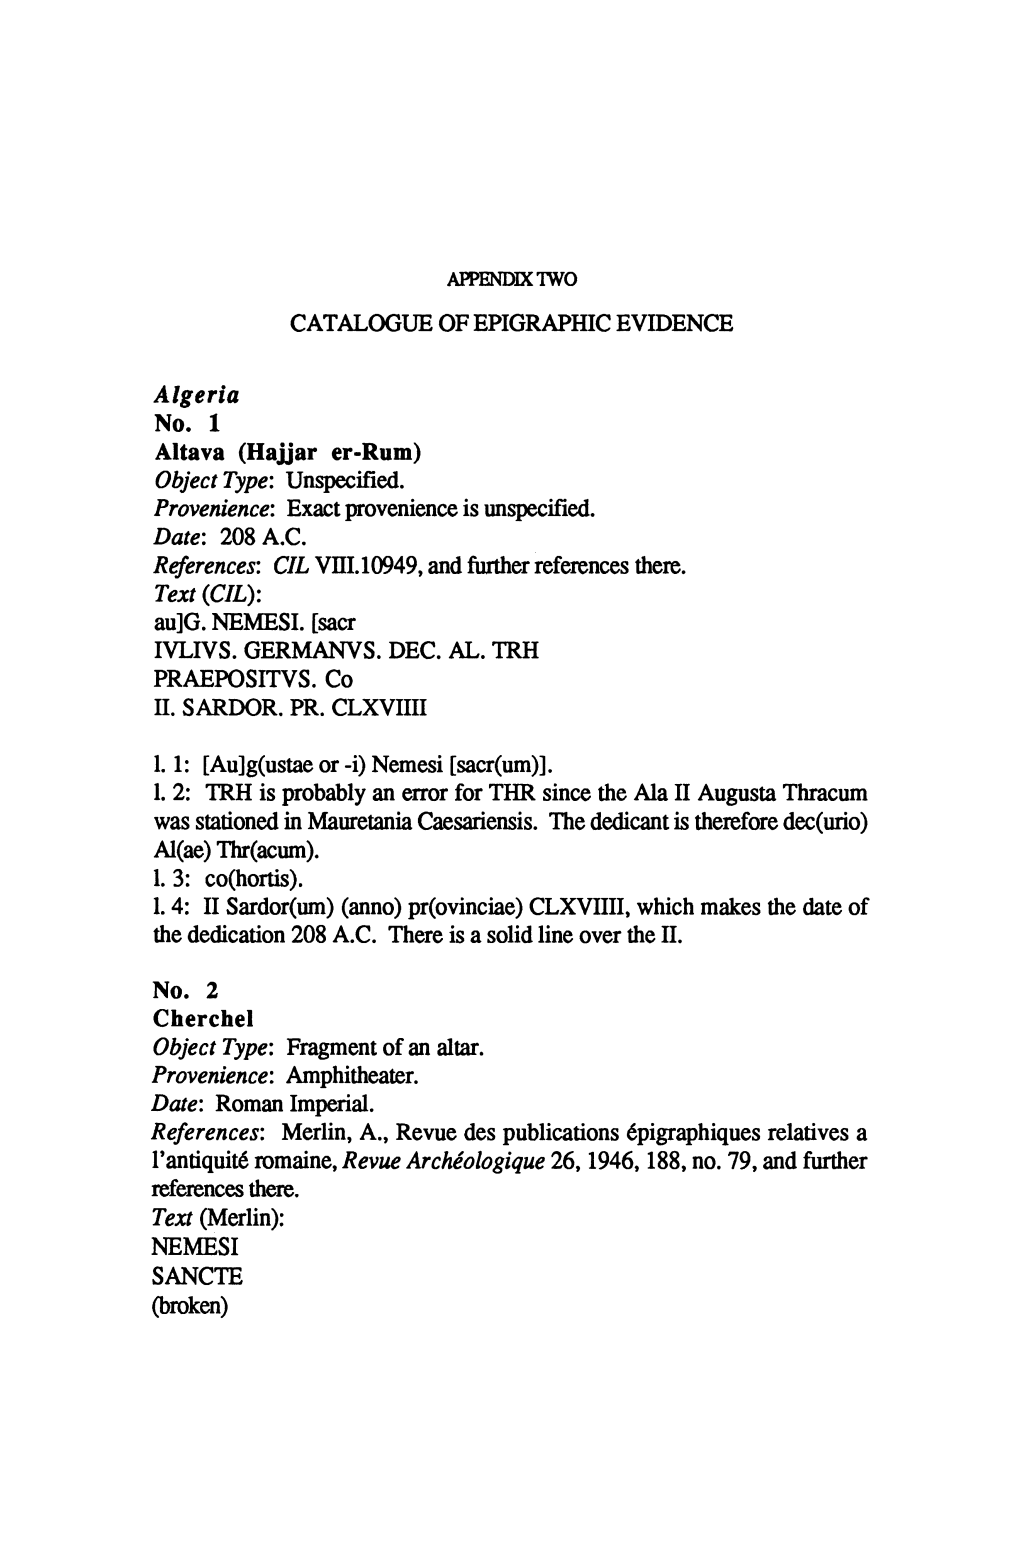 CATALOGUE of EPIGRAPHIC EVIDENCE Algeria Altava